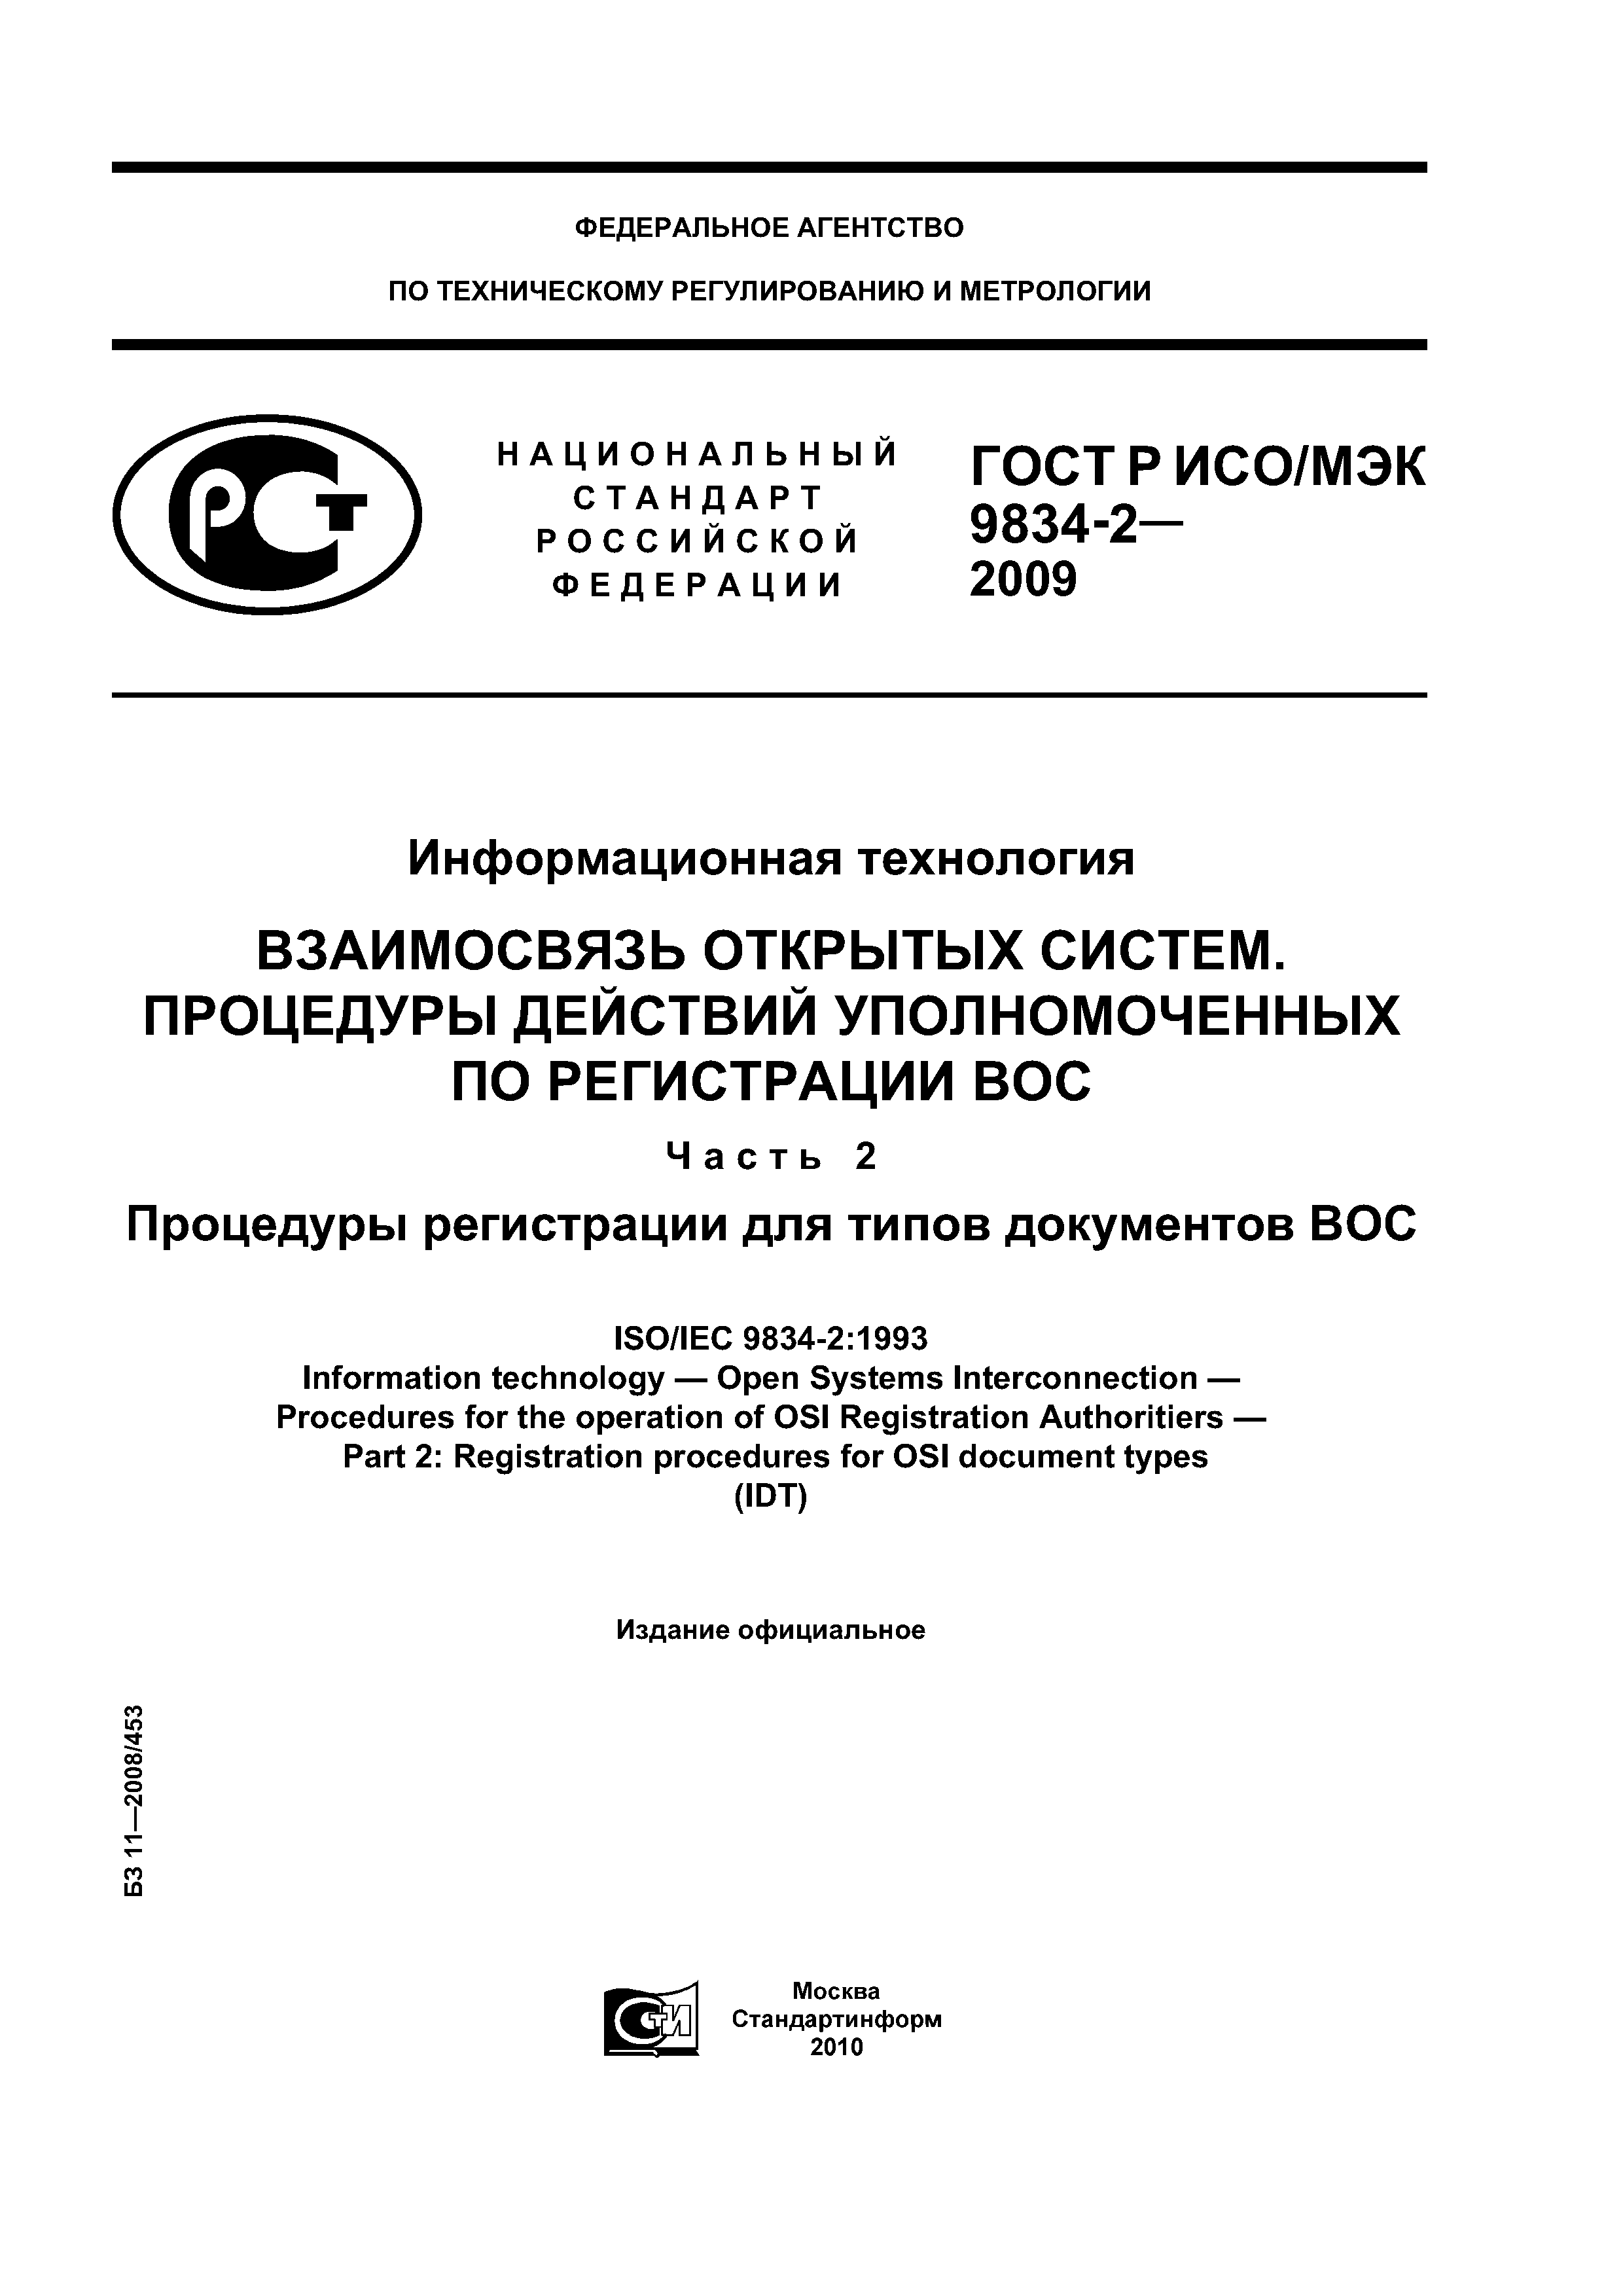 ГОСТ Р ИСО/МЭК 9834-2-2009